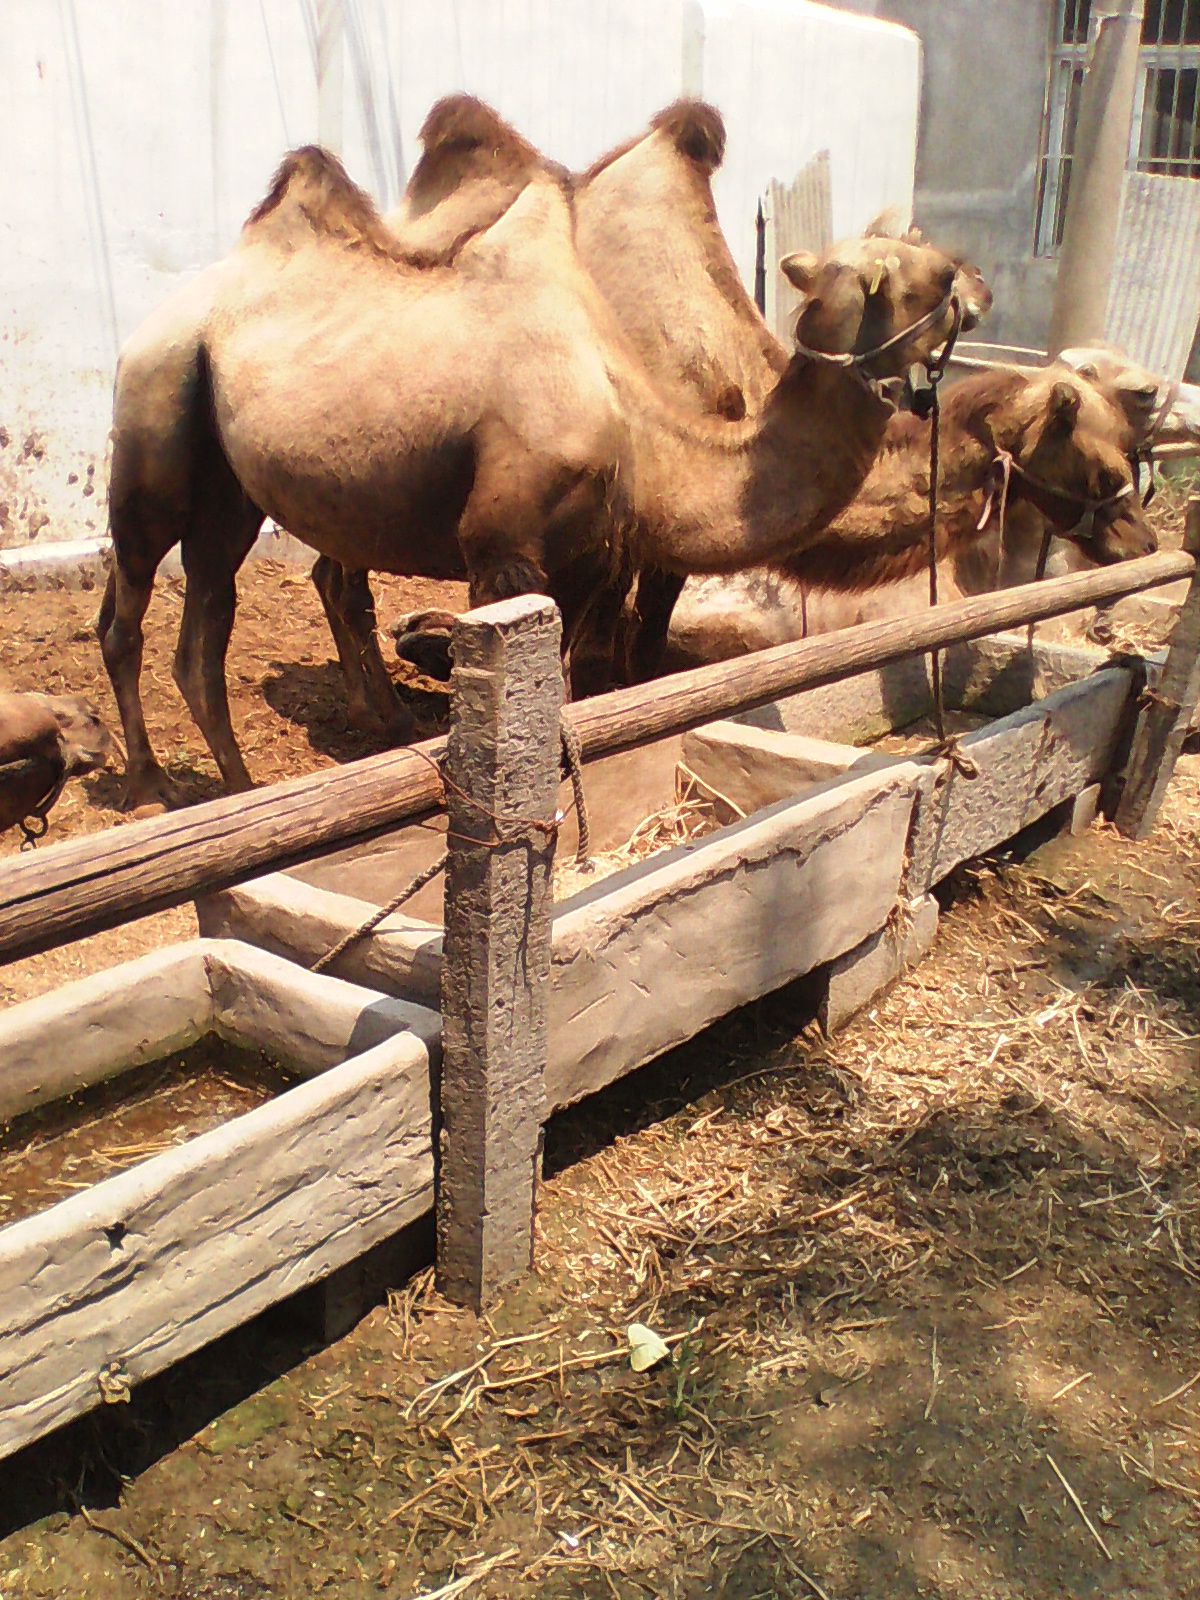 供应用于骑乘、屠宰的使用骆驼奶的好处?图片